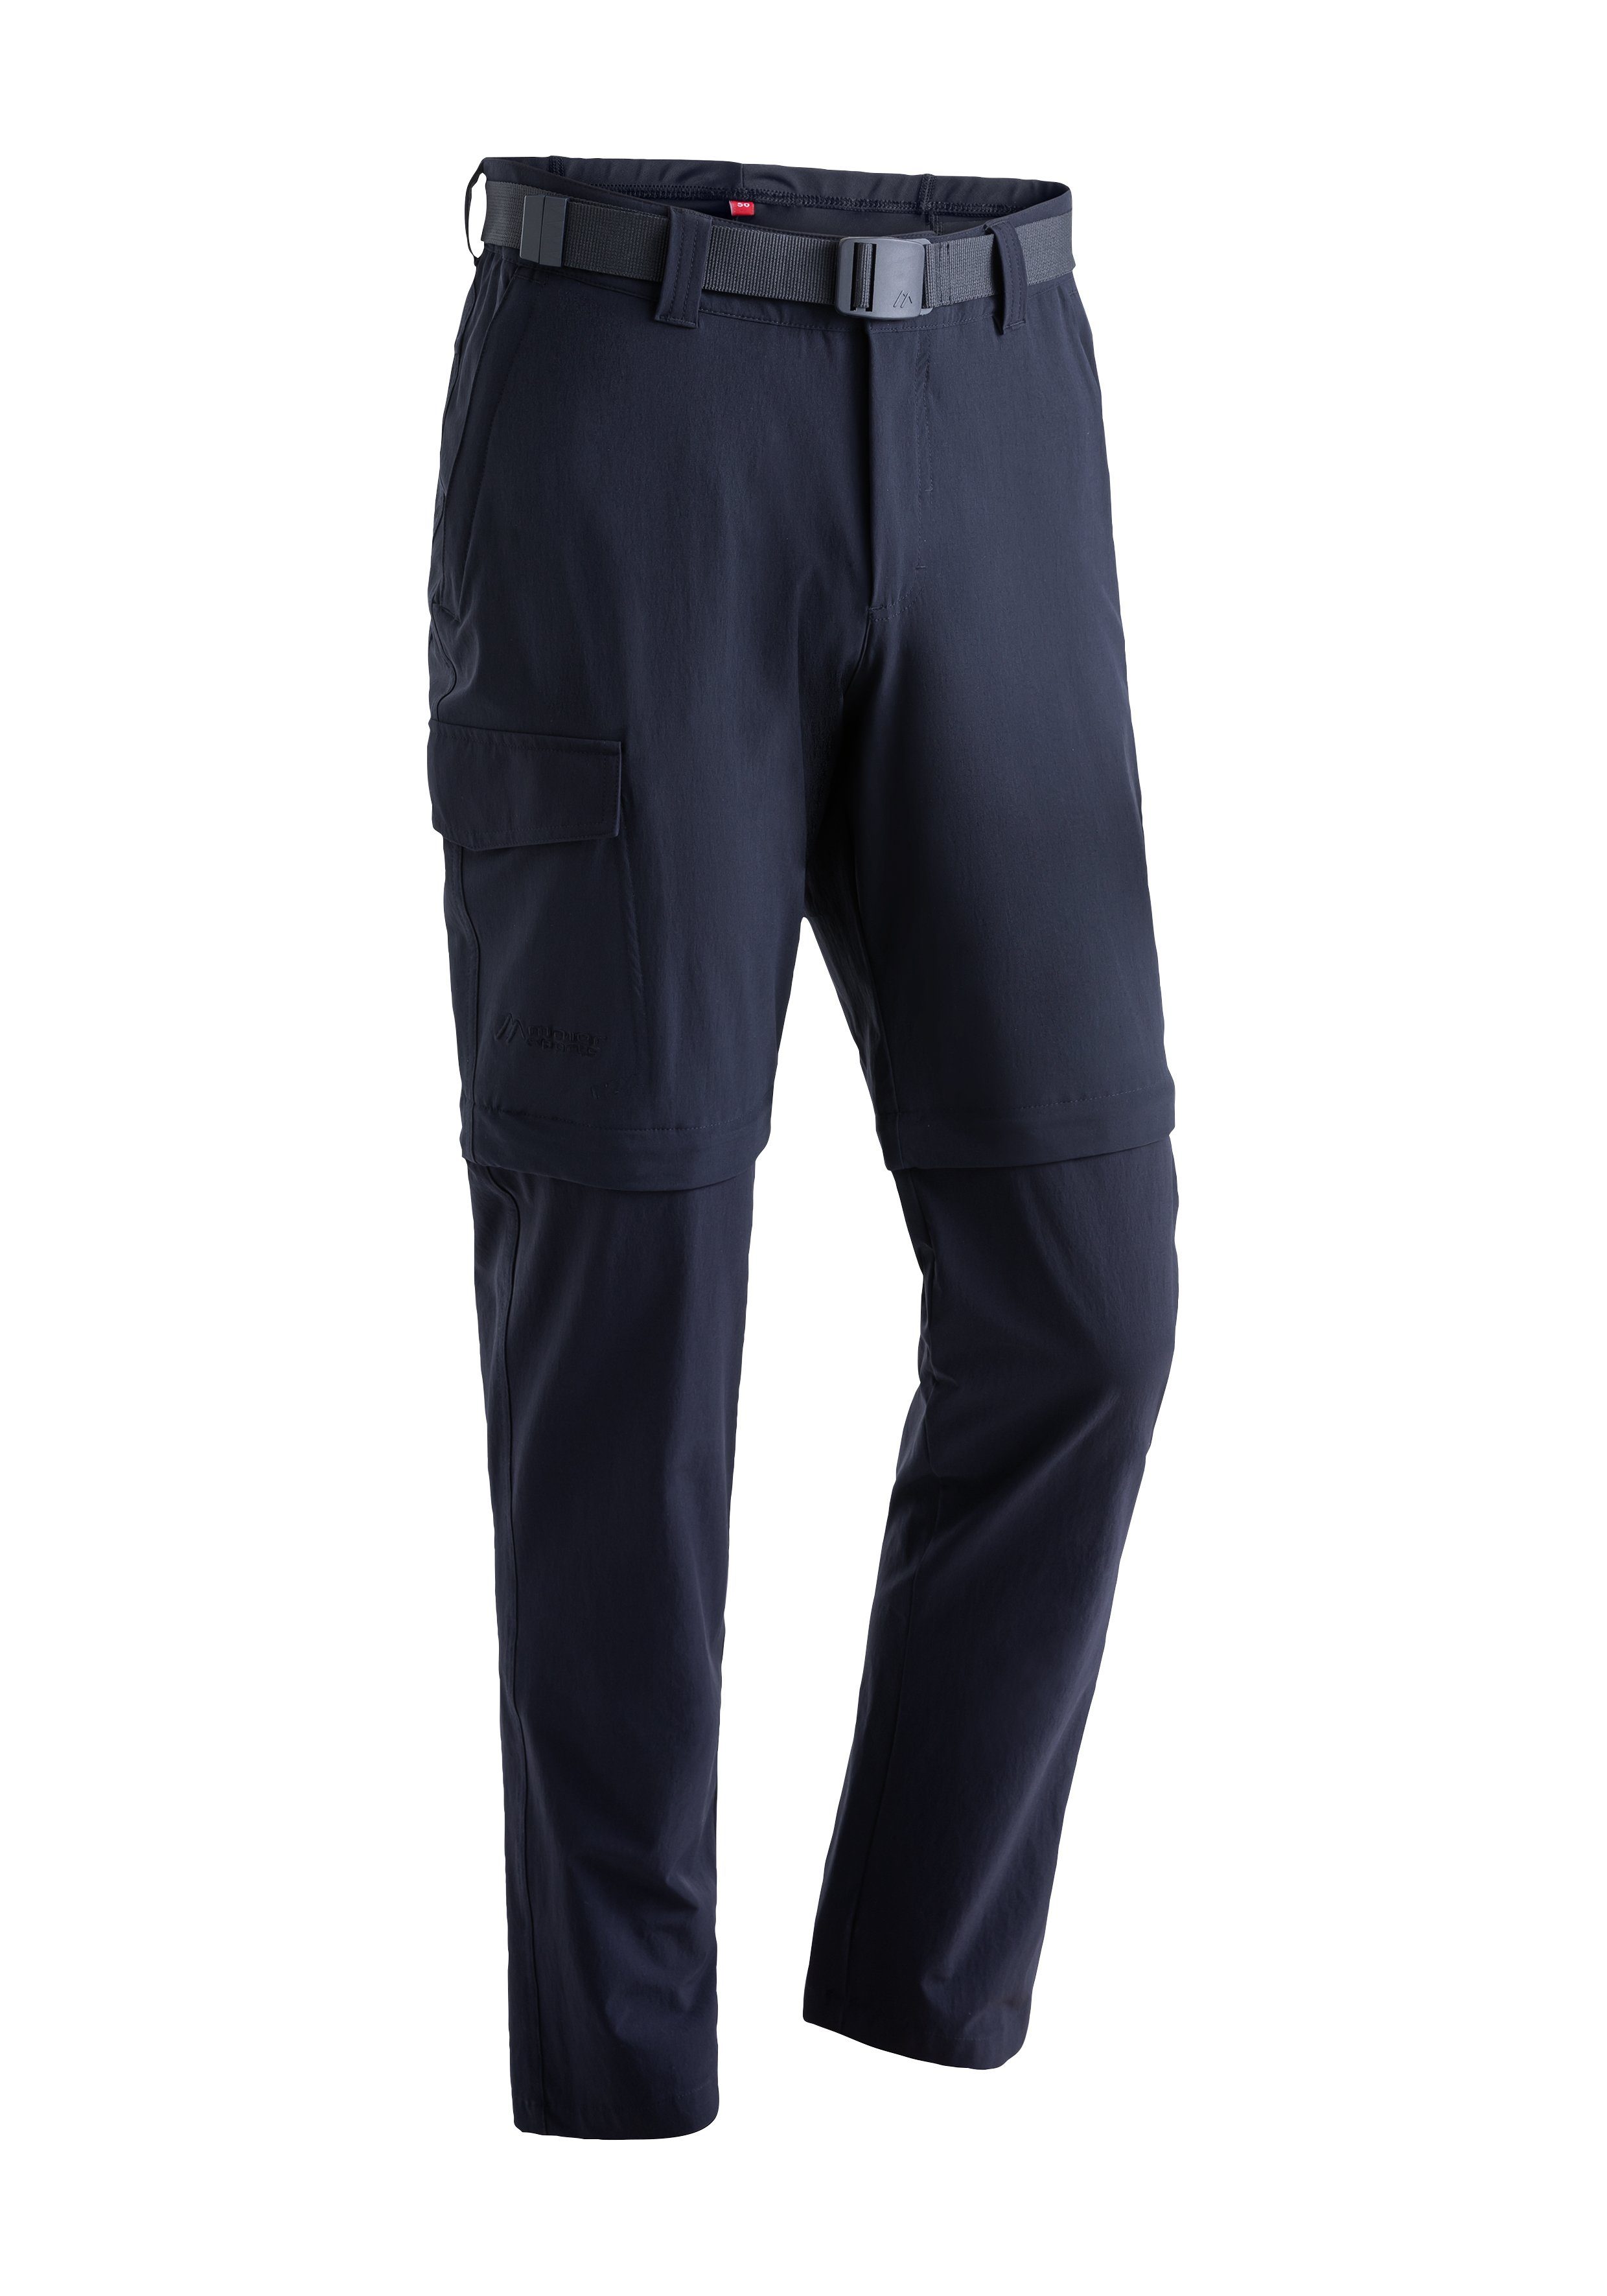 Maier Sports Funktionshose Torid slim zip Herren zipp-off Wanderhose, atmungsaktive Outdoor-Hose dunkelblau